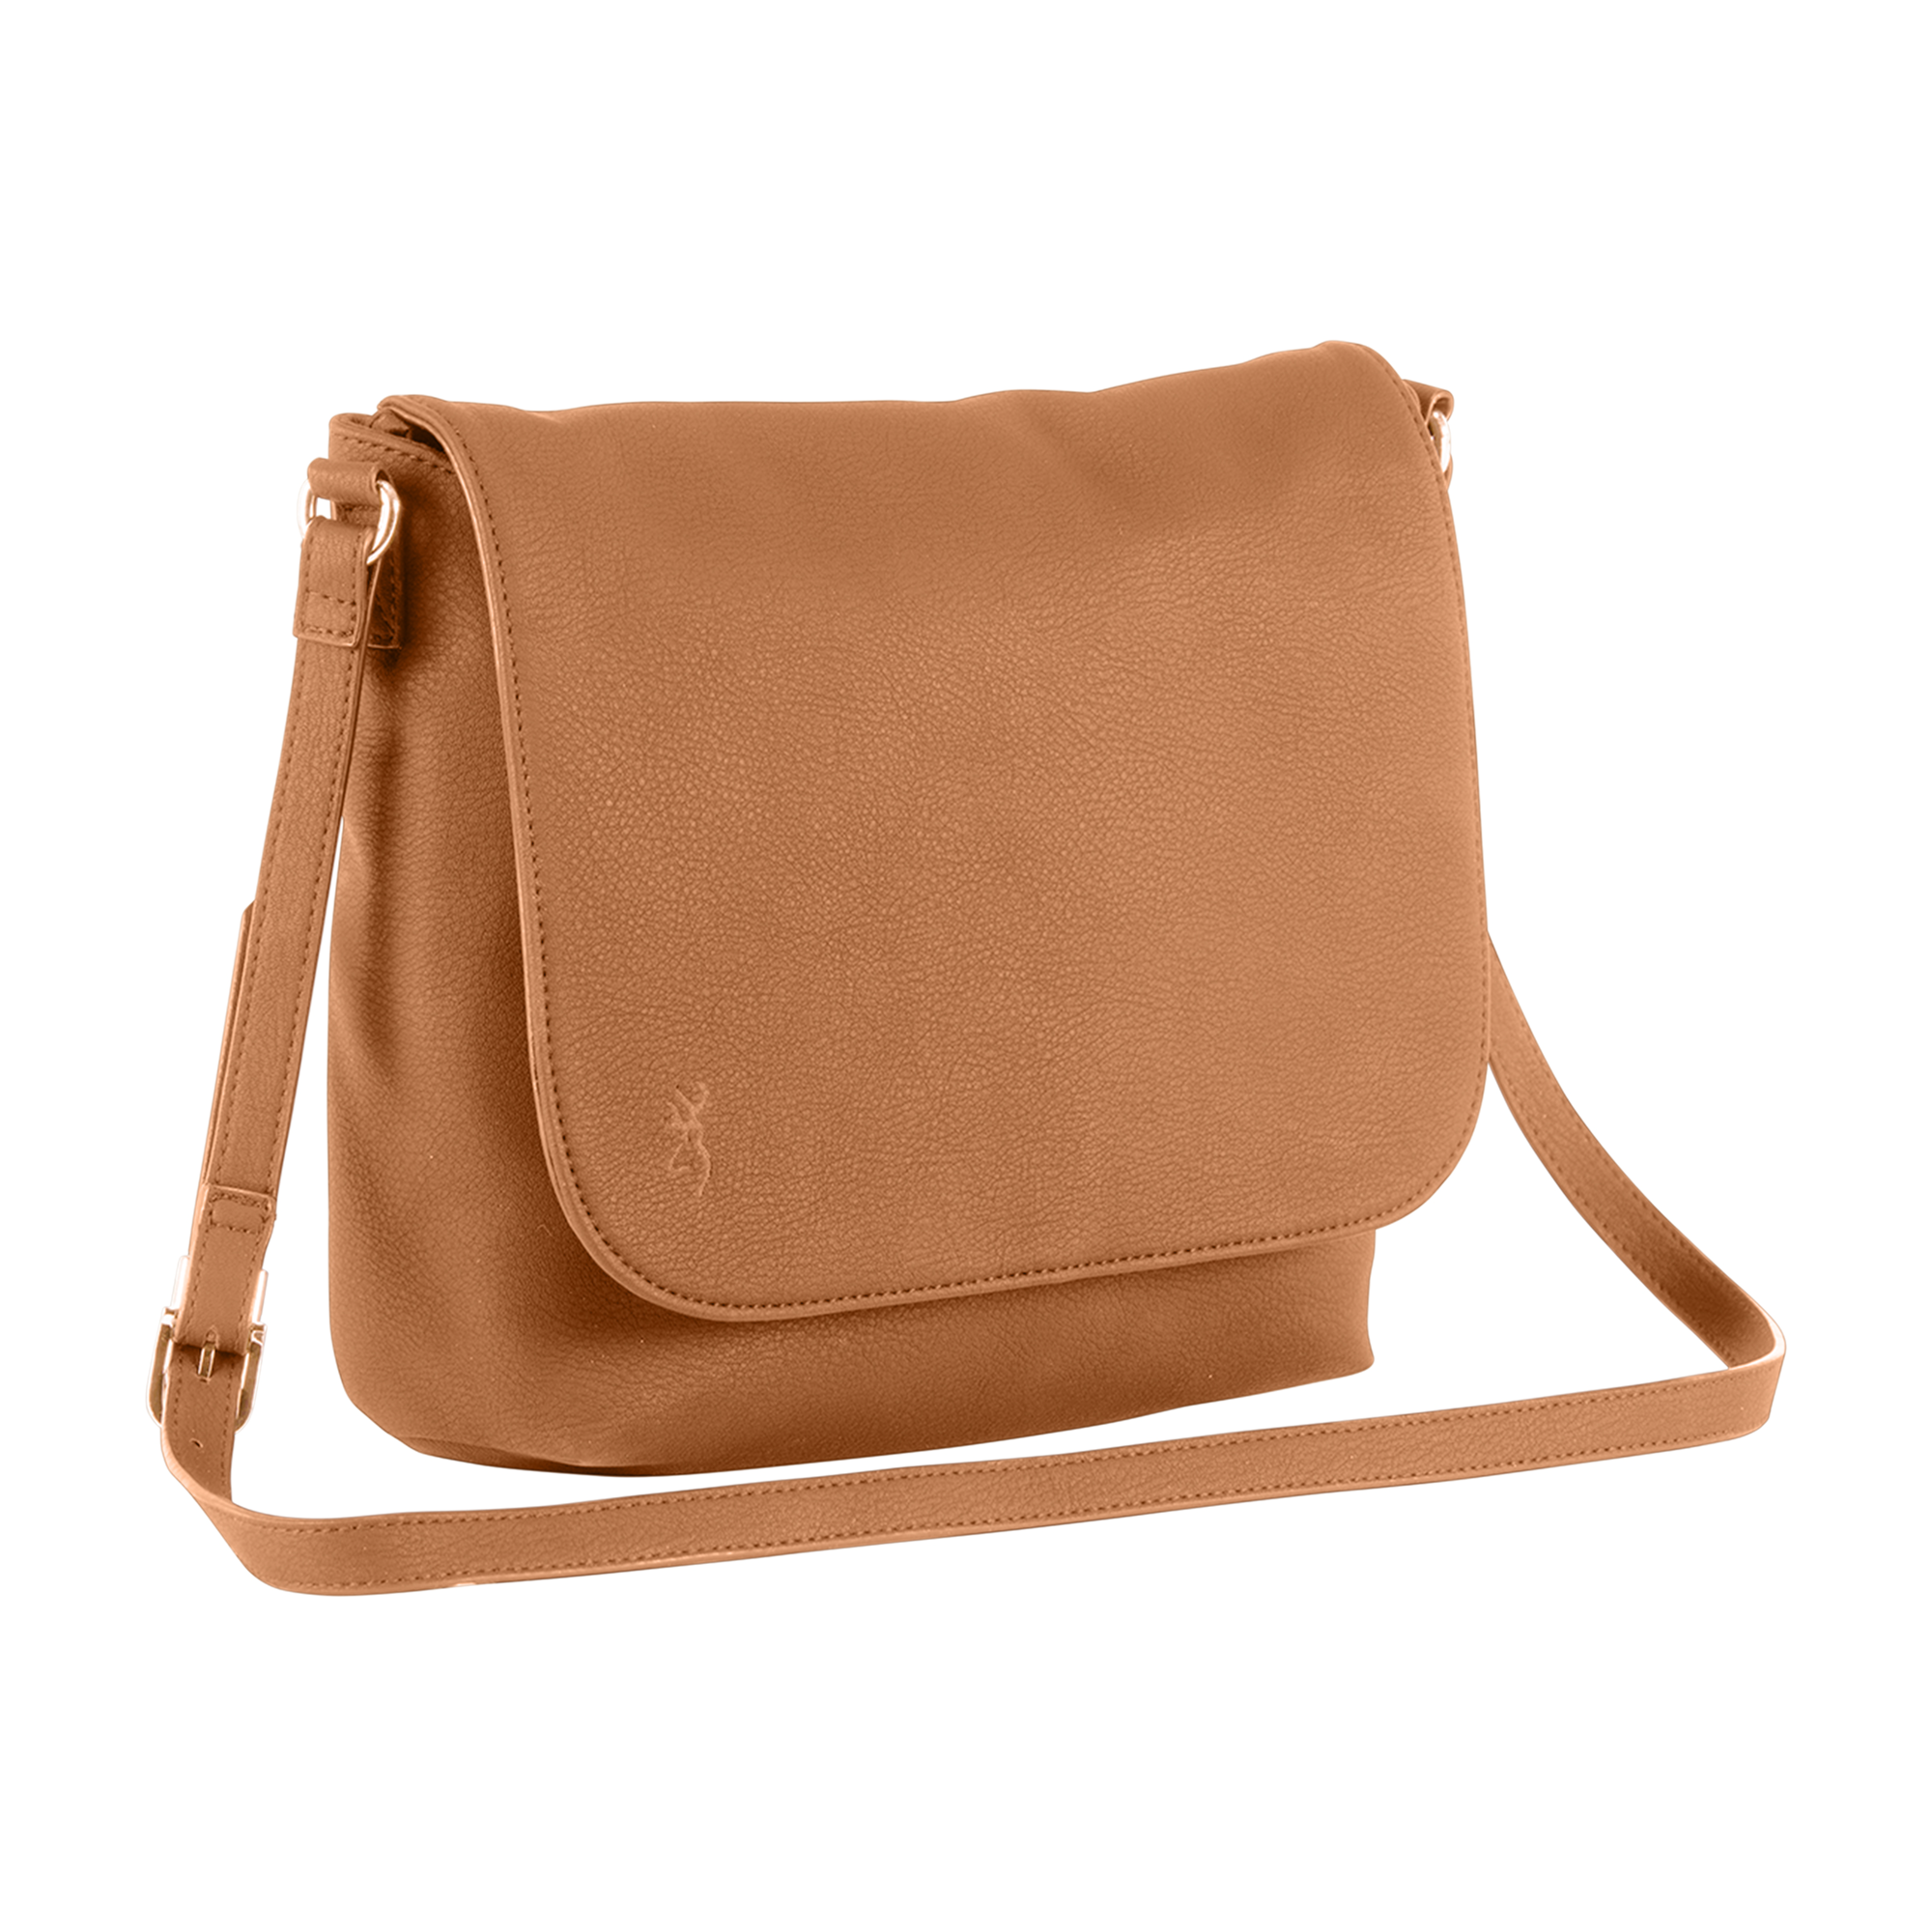 Capezio Tan brown Leather Crossbody Ladies Purse handbag strap shoulder |  eBay